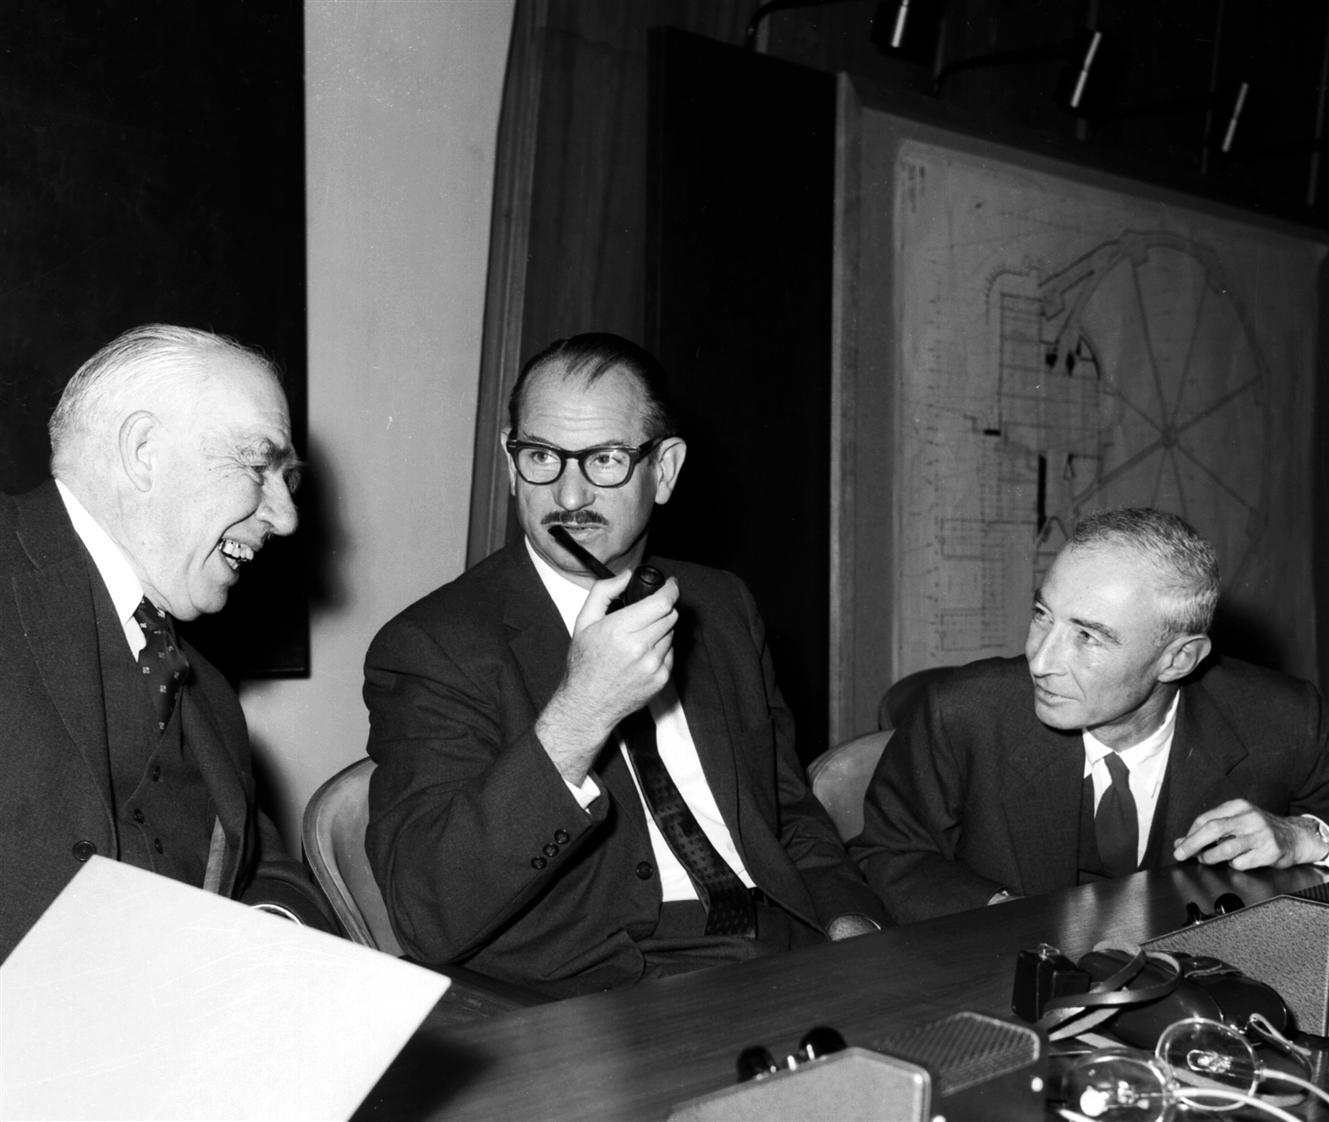 1960: Επίσημα εγκαίνια του PS Το CERN είχε την θερμή υποστήριξη των μεγάλων φυσικών της εποχής (αριστερά ο Bohr δεξιά ο Oppenheimer ).